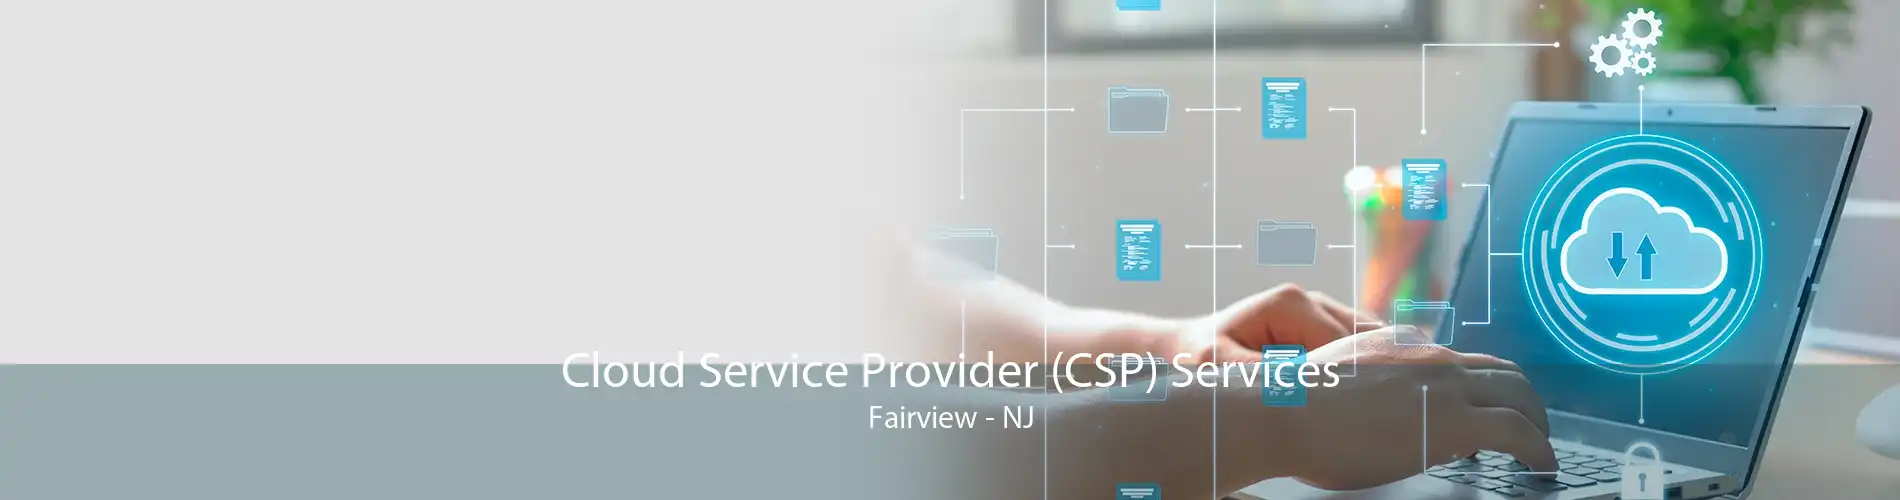 Cloud Service Provider (CSP) Services Fairview - NJ